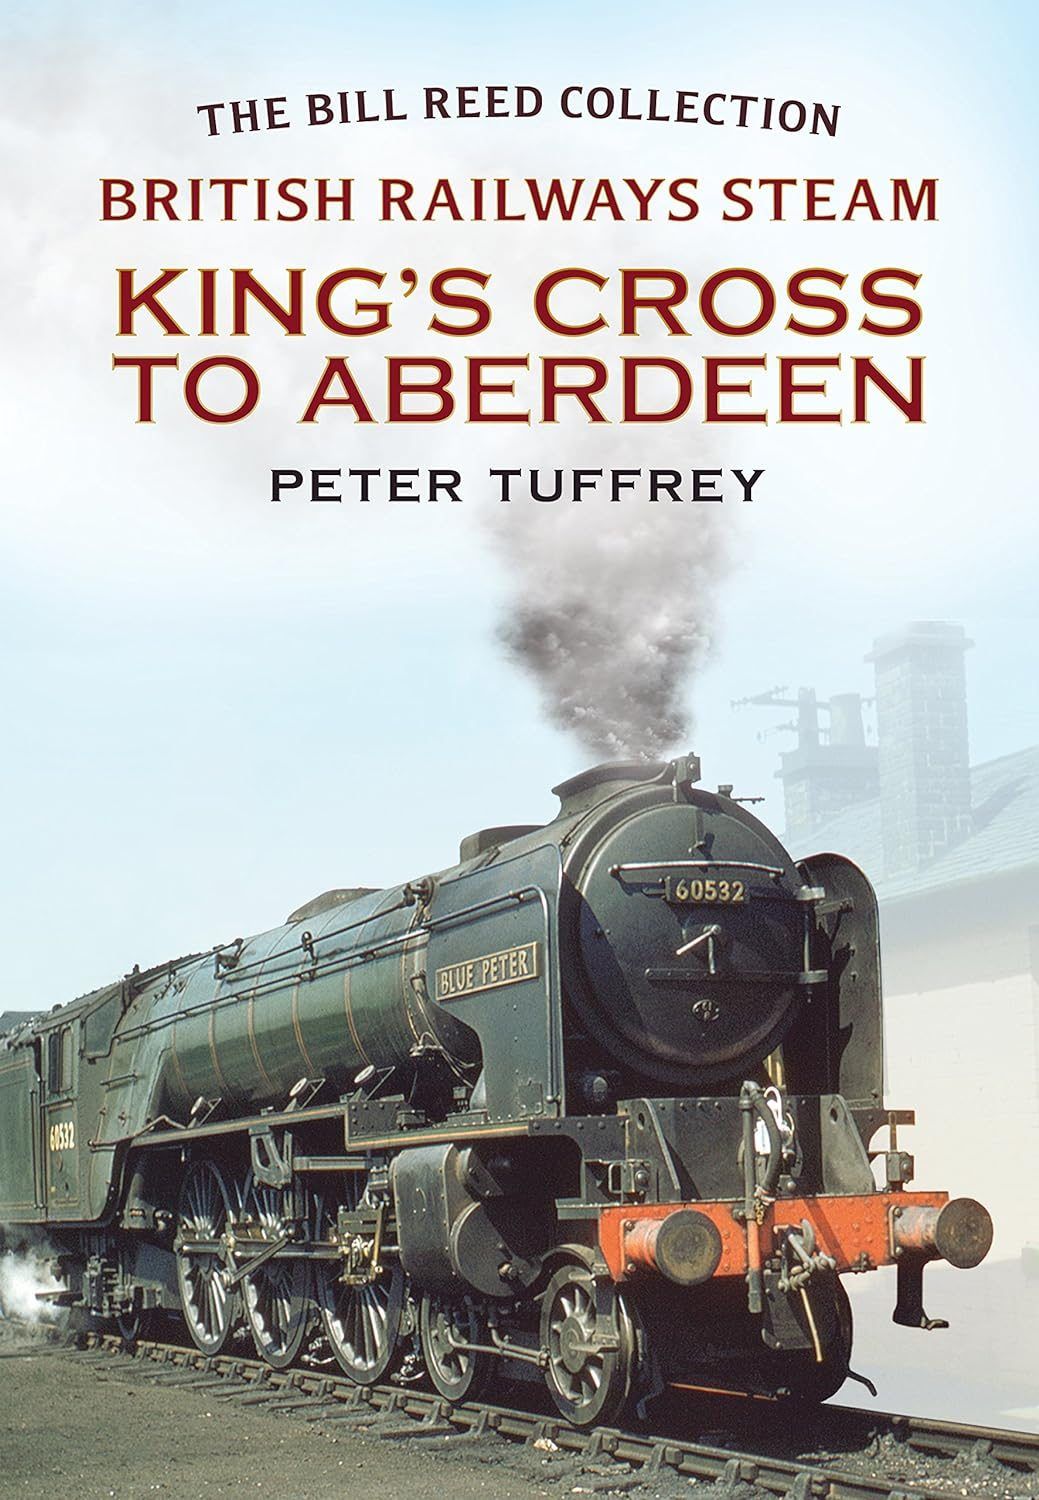 KING'S CROSS TO ABERDEEN: British Railways Steam